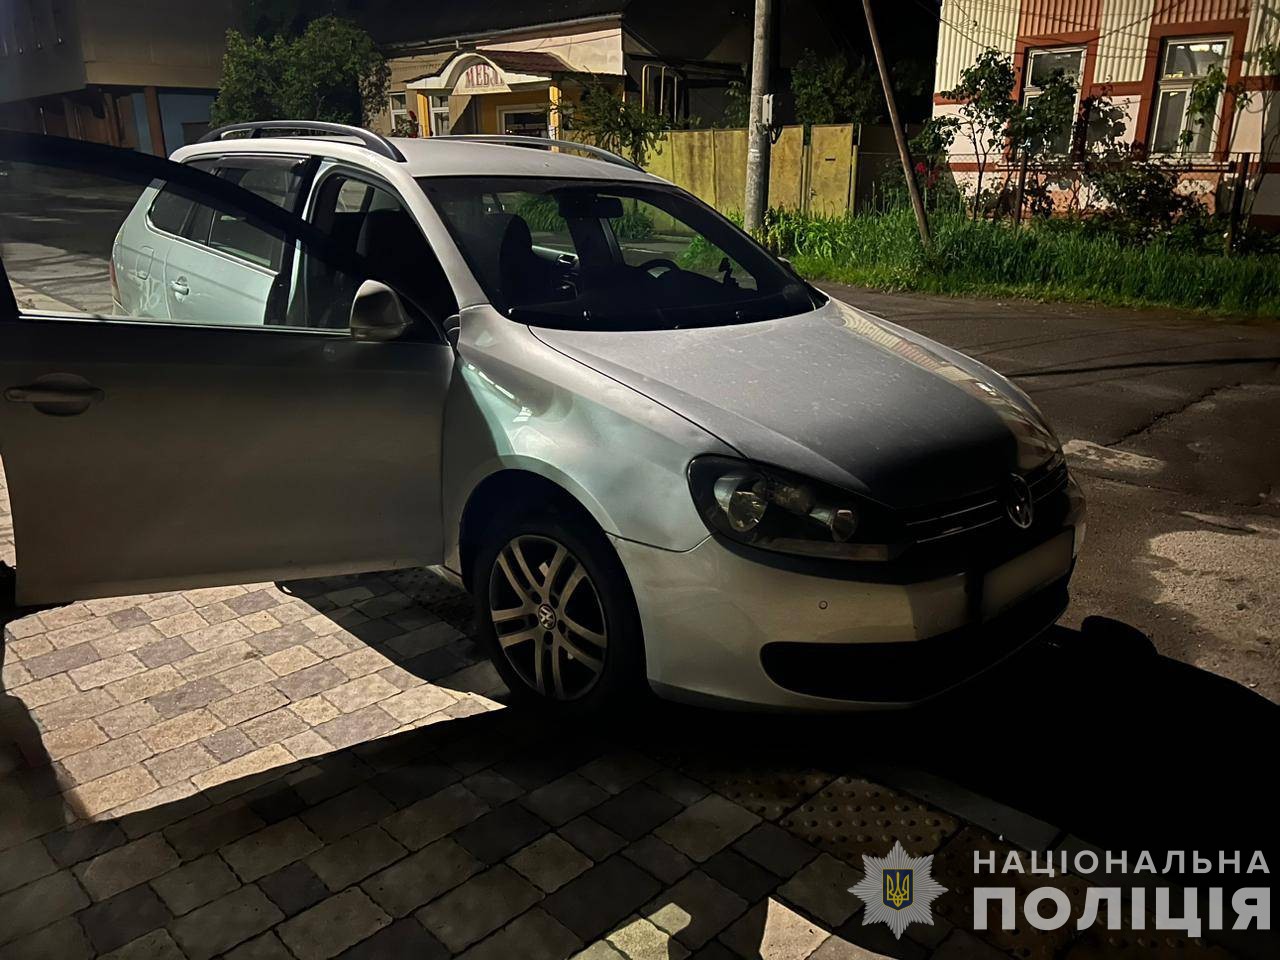 У Лазещині на Рахівщині Citroën травмував 9-річну дитину, а в Стройному на Мукачівщині Volkswagen – 8-річну